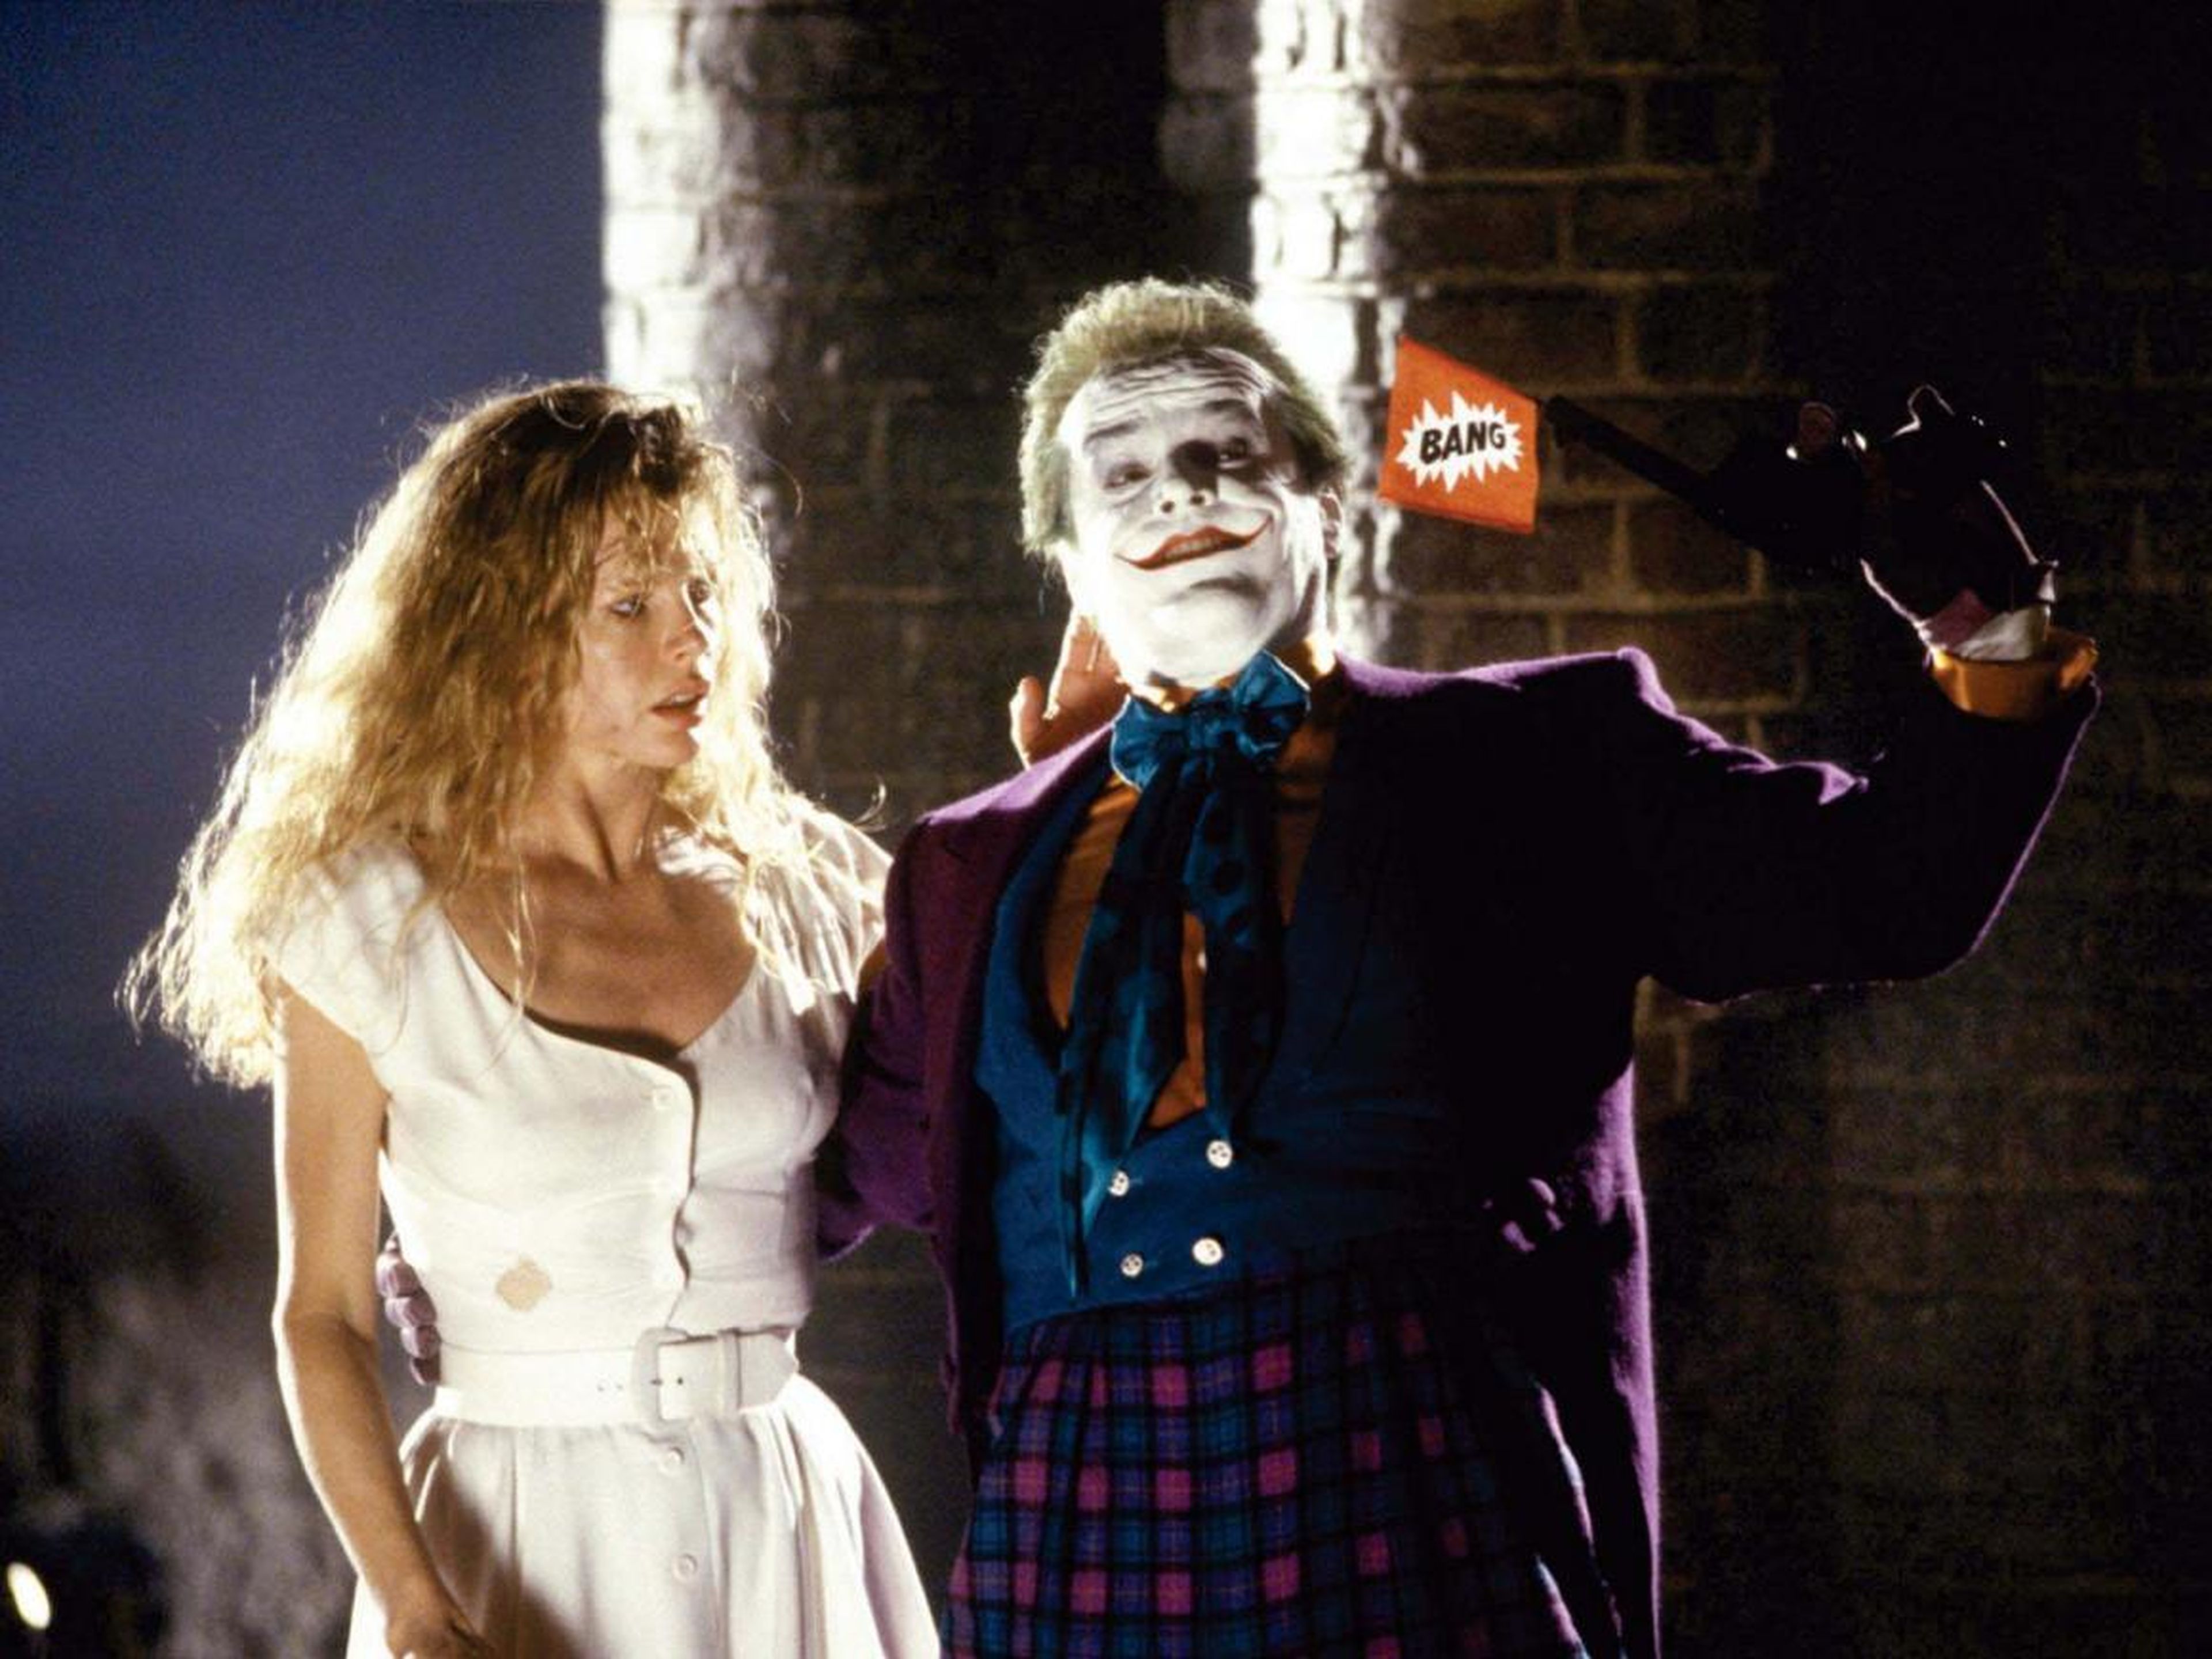 6. Jack Nicholson as The Joker in "Batman" (1989)